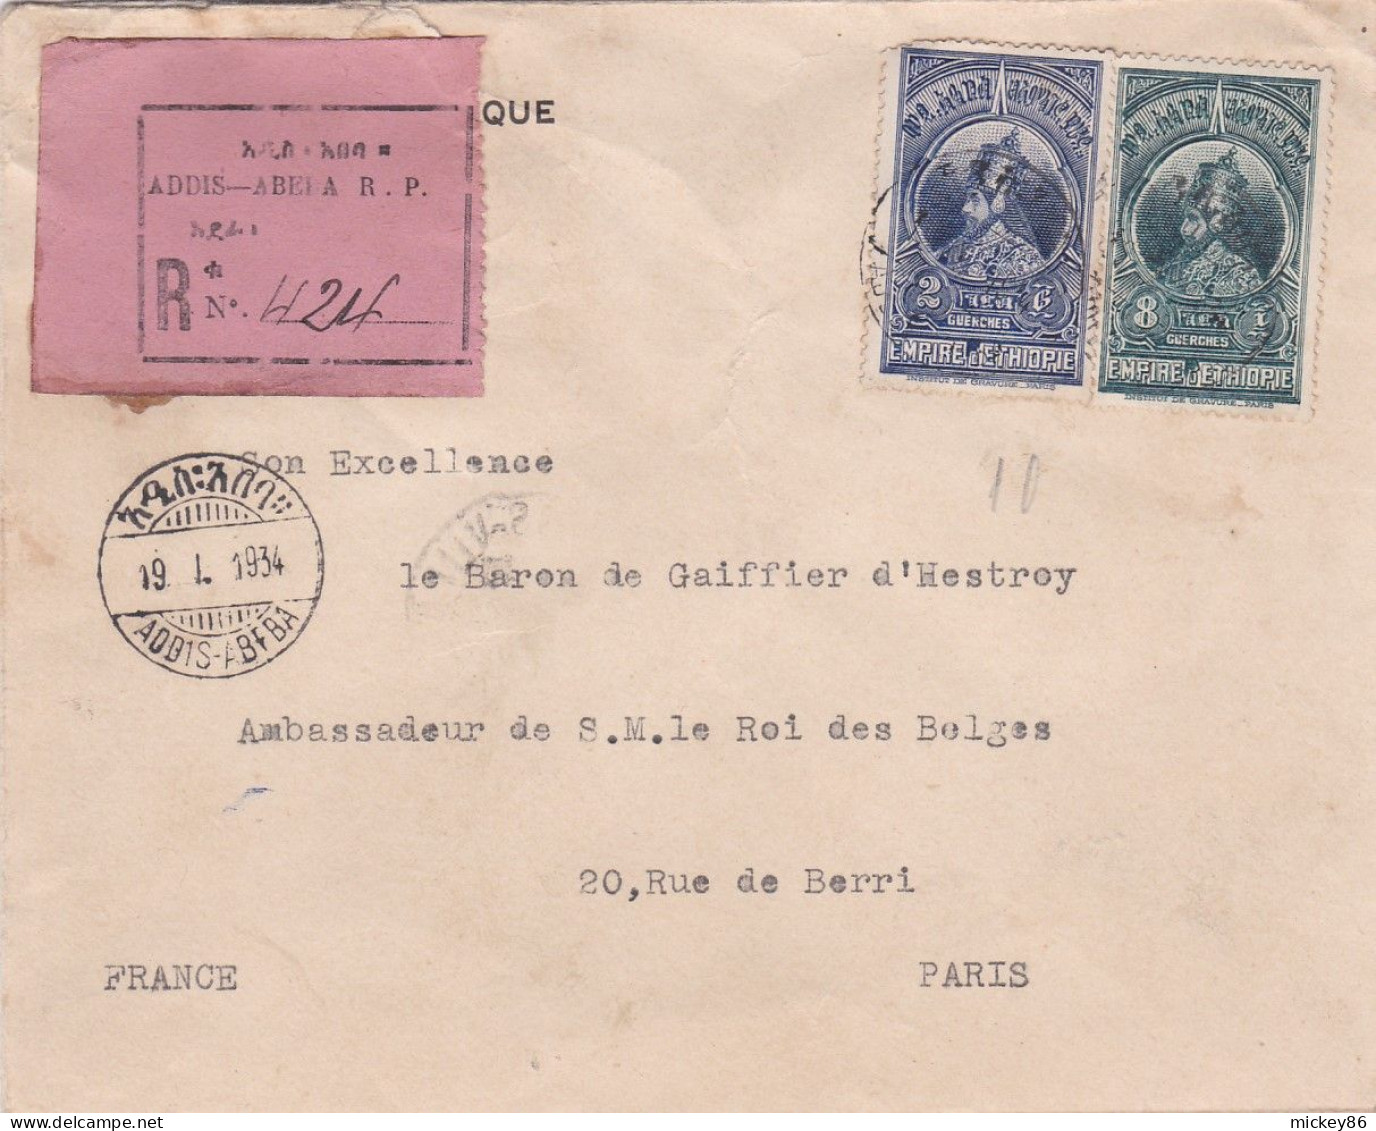 ETHIOPIE -1934 - Lettre Recommandée ADDIS-ABEBA  Pour PARIS (France )..beaux Timbres  Sur Lettre , Cachets - Ethiopie